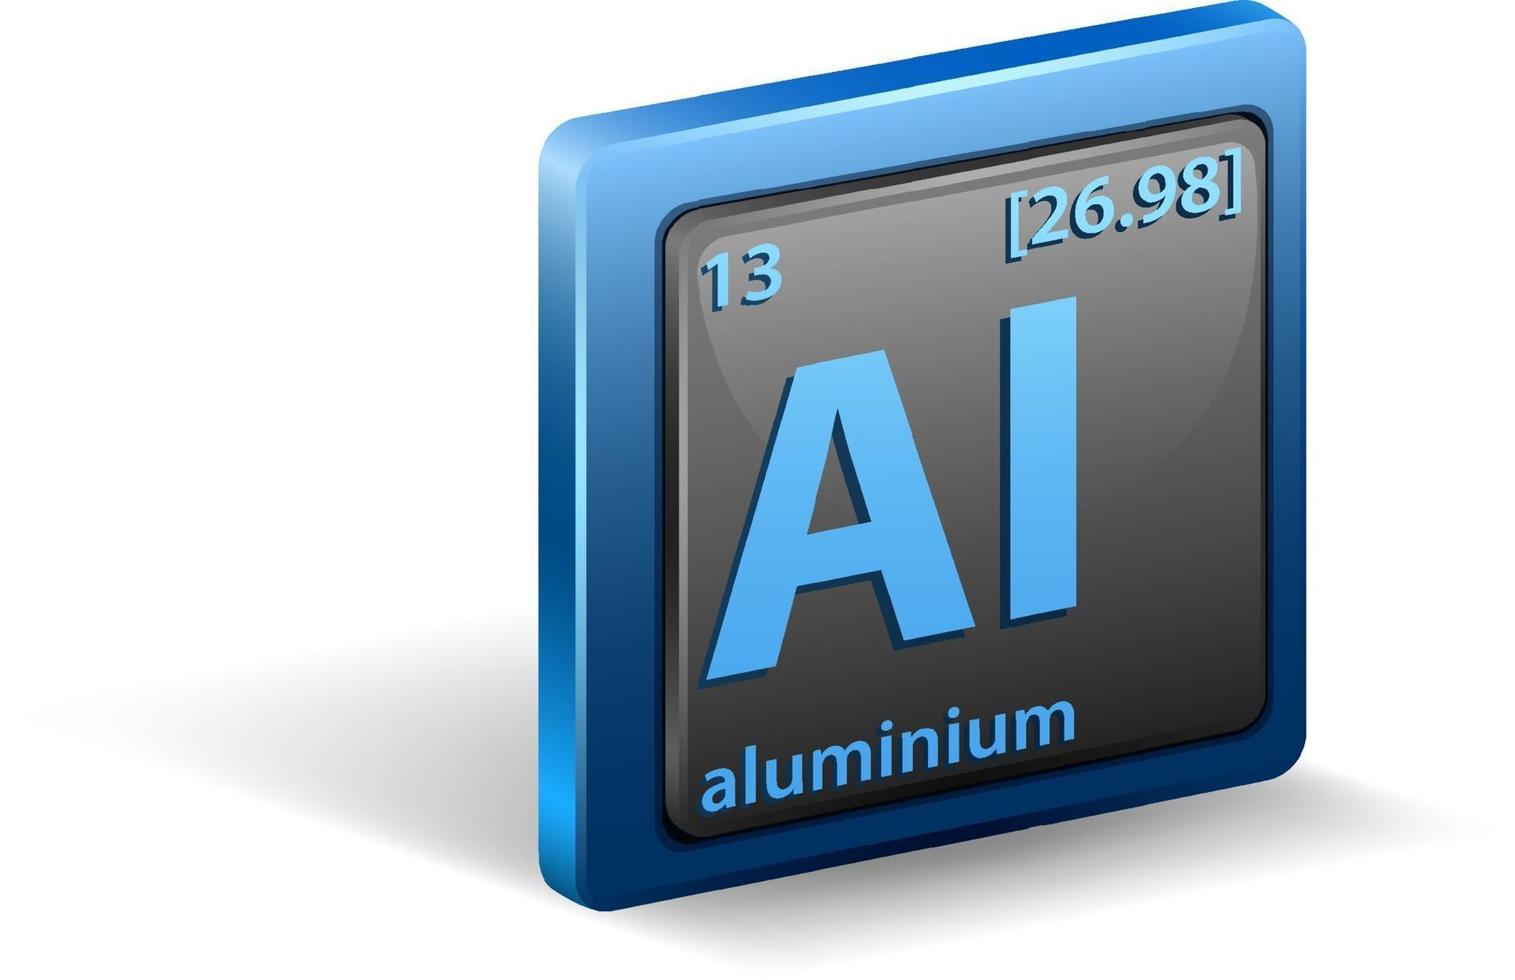 elemento químico de alumínio. símbolo químico com número atômico e massa atômica. vetor